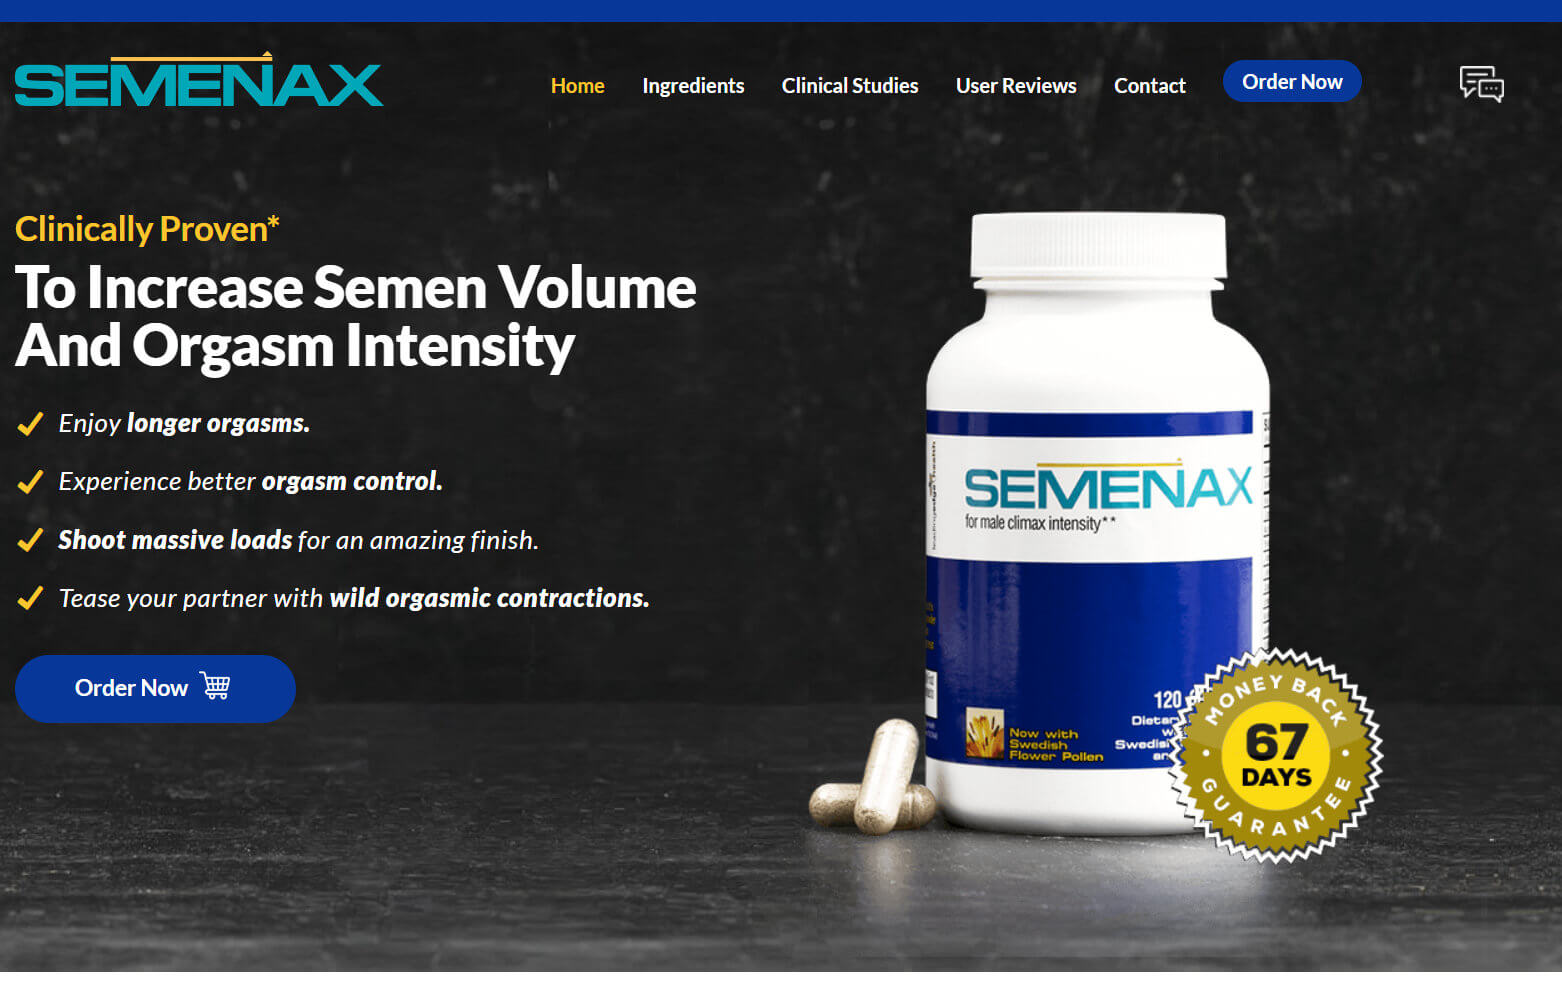 semenax official website screenshot